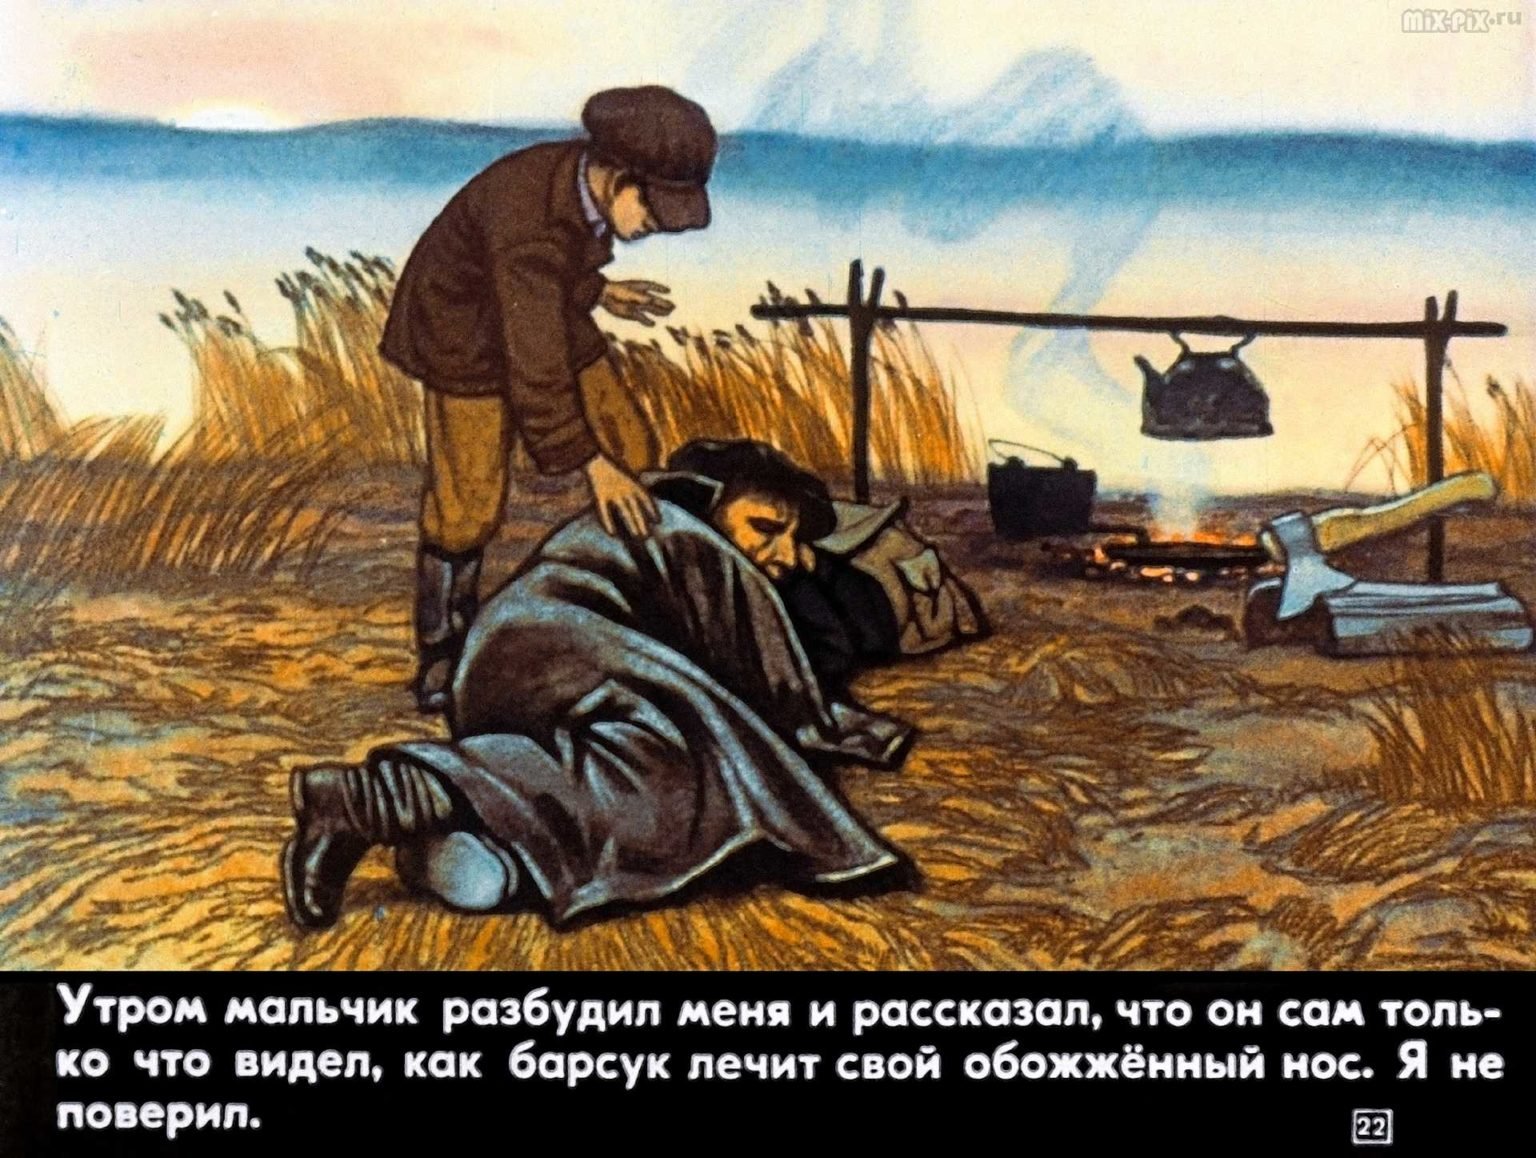 Иллюстрация к рассказу барсучий нос Паустовский. Барсучий нос 1982.